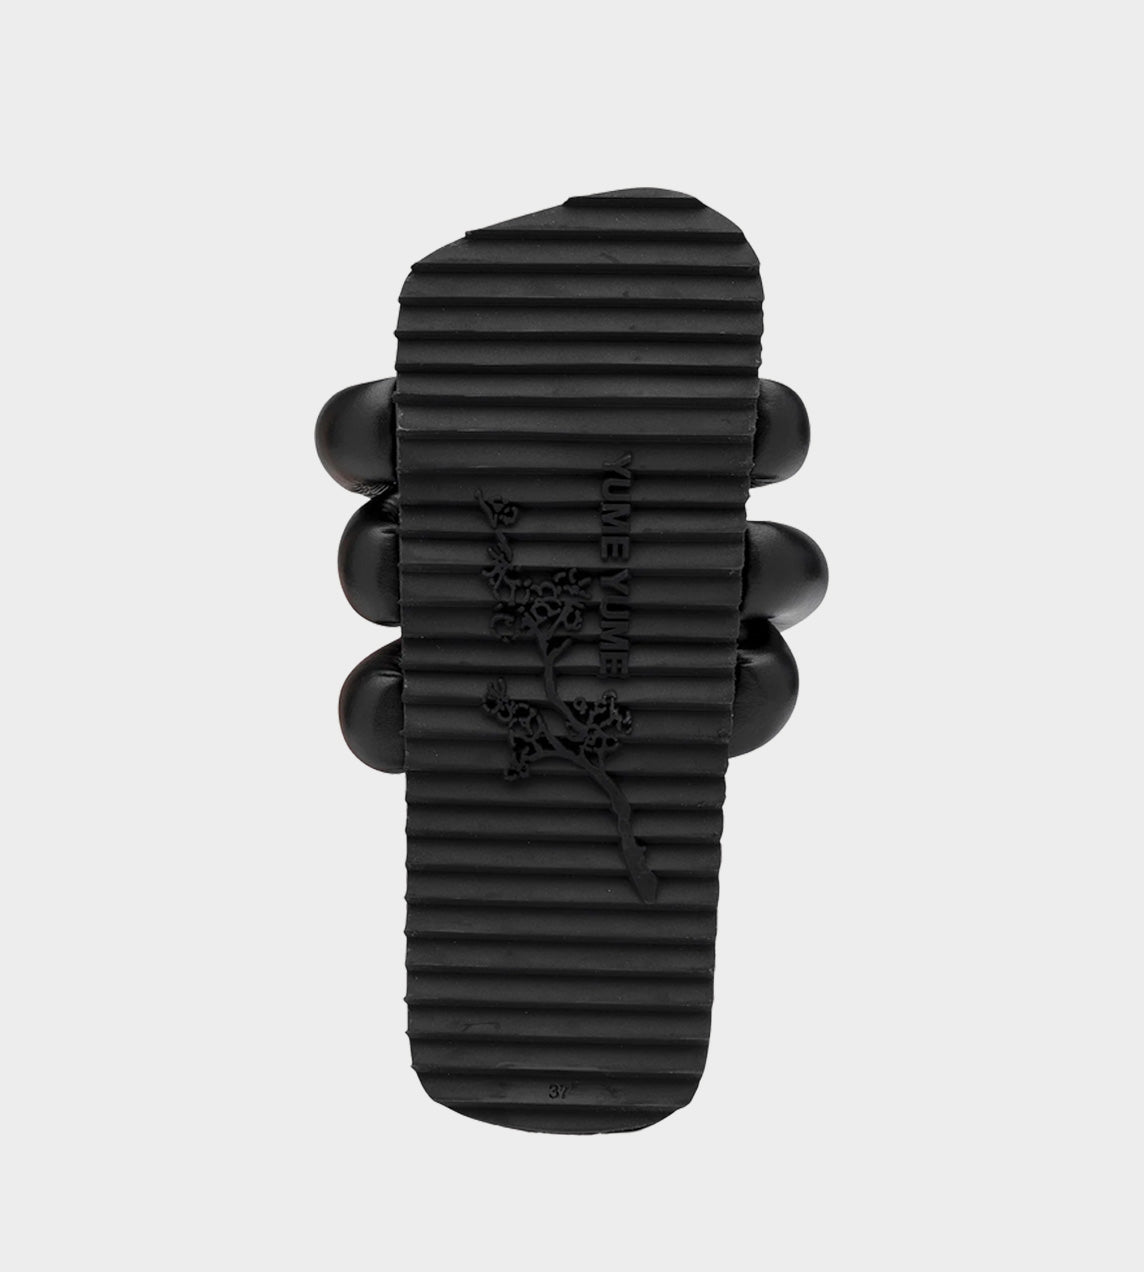 Yume Yume - Tyre Slide - Black Bio Leather